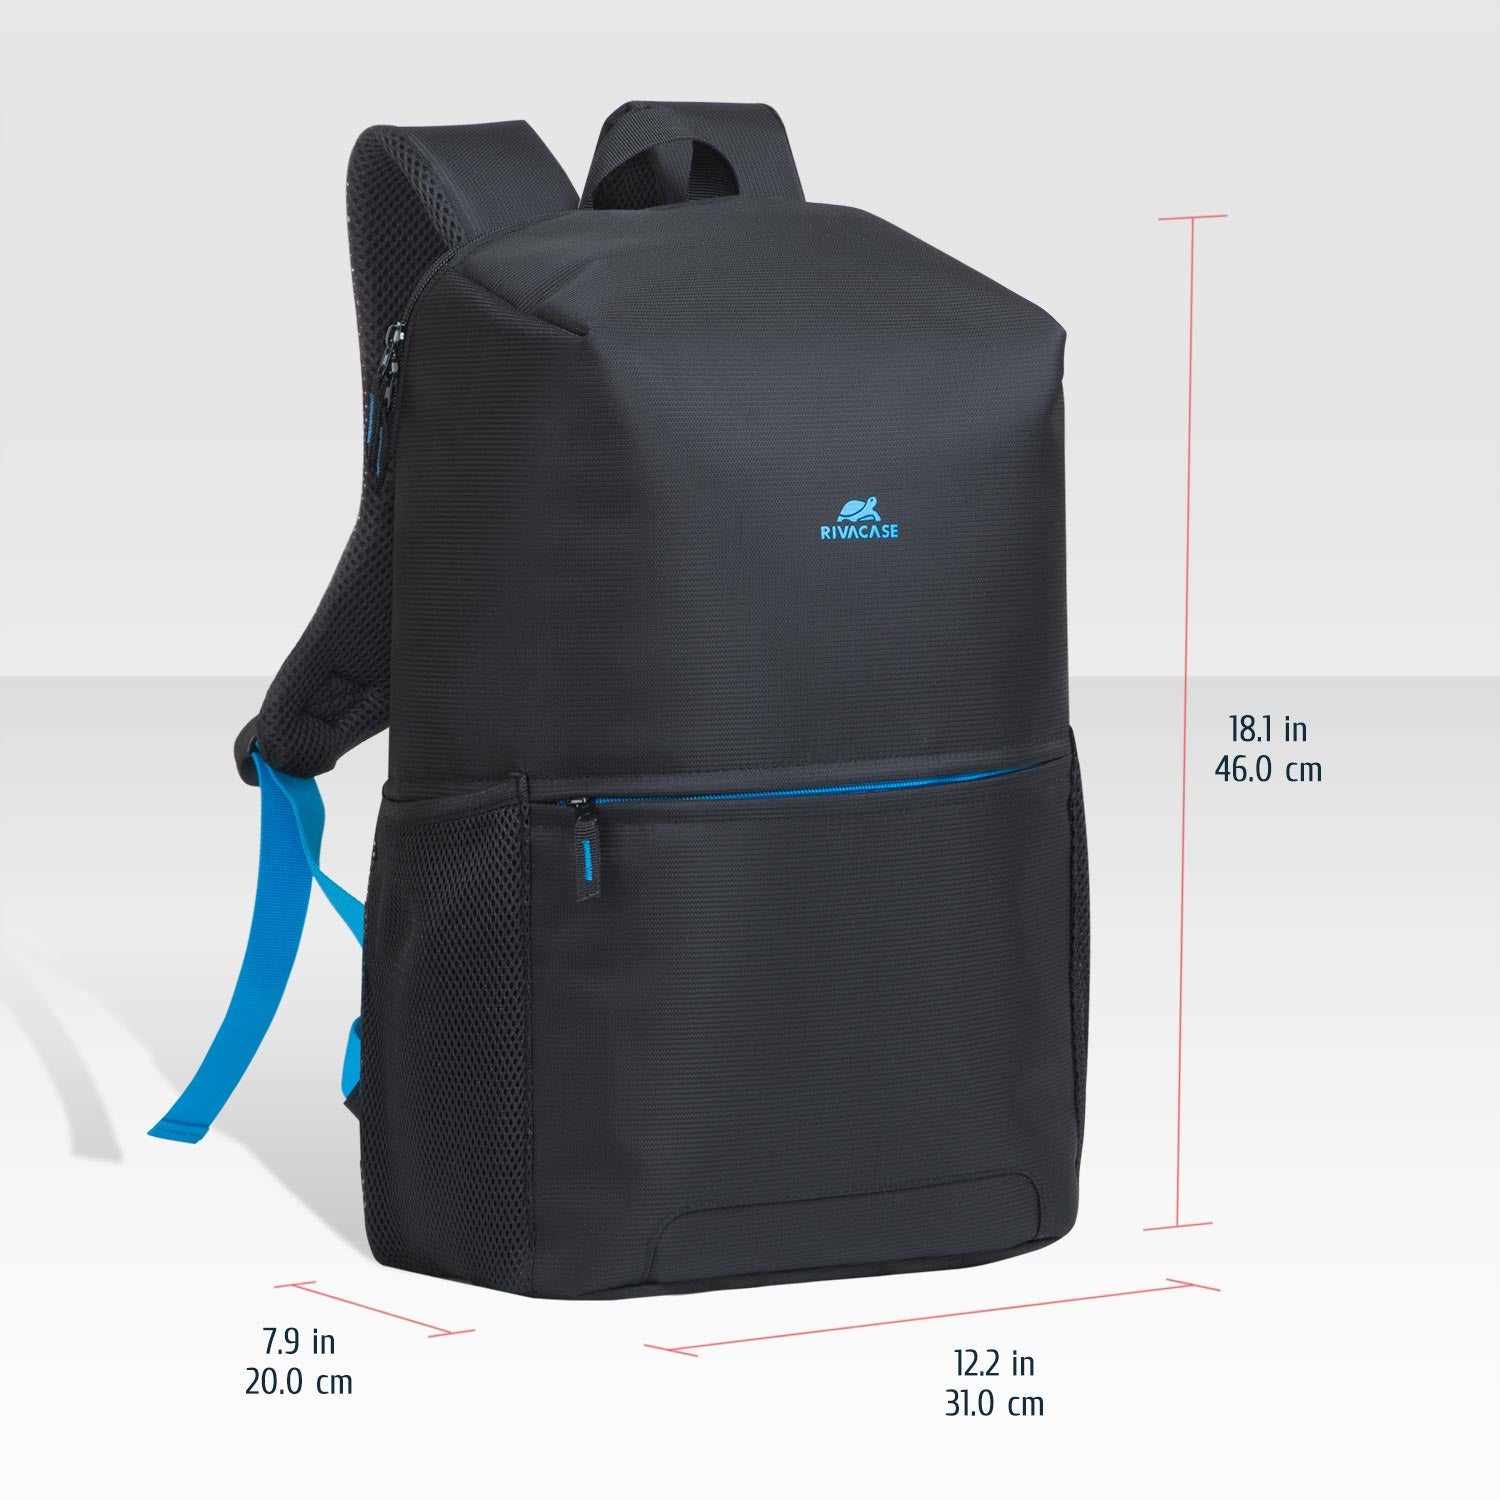 Backpack para Laptops RivaCase modelo 8067 de 15.6